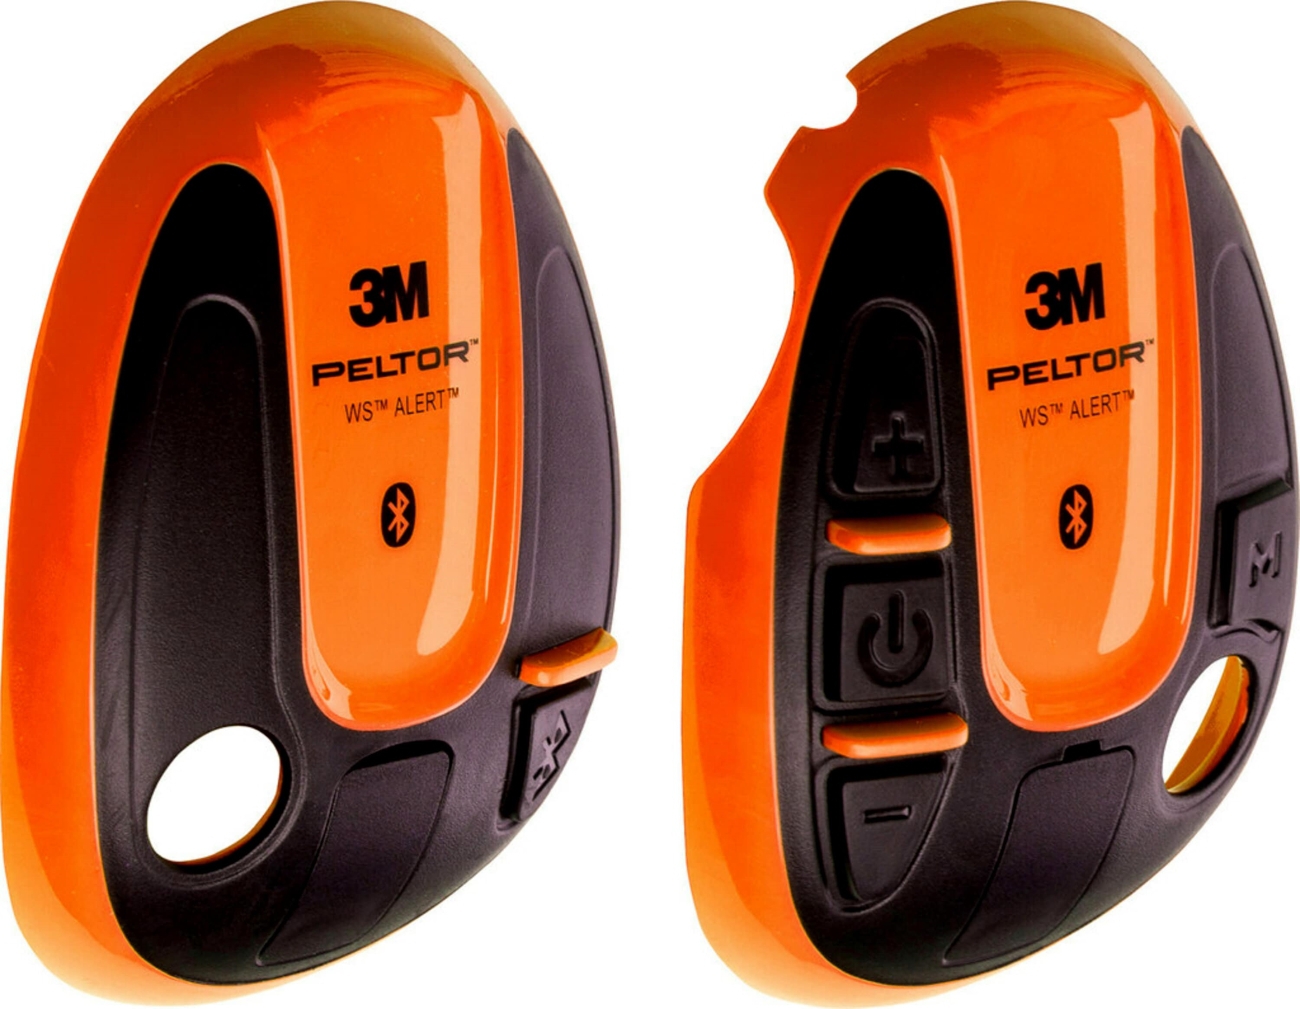 3M PELTOR-suojukset WS ALERT-kuulokkeisiin, oranssi, 1 pari (vasen+oikea), 210300-664-OR/1